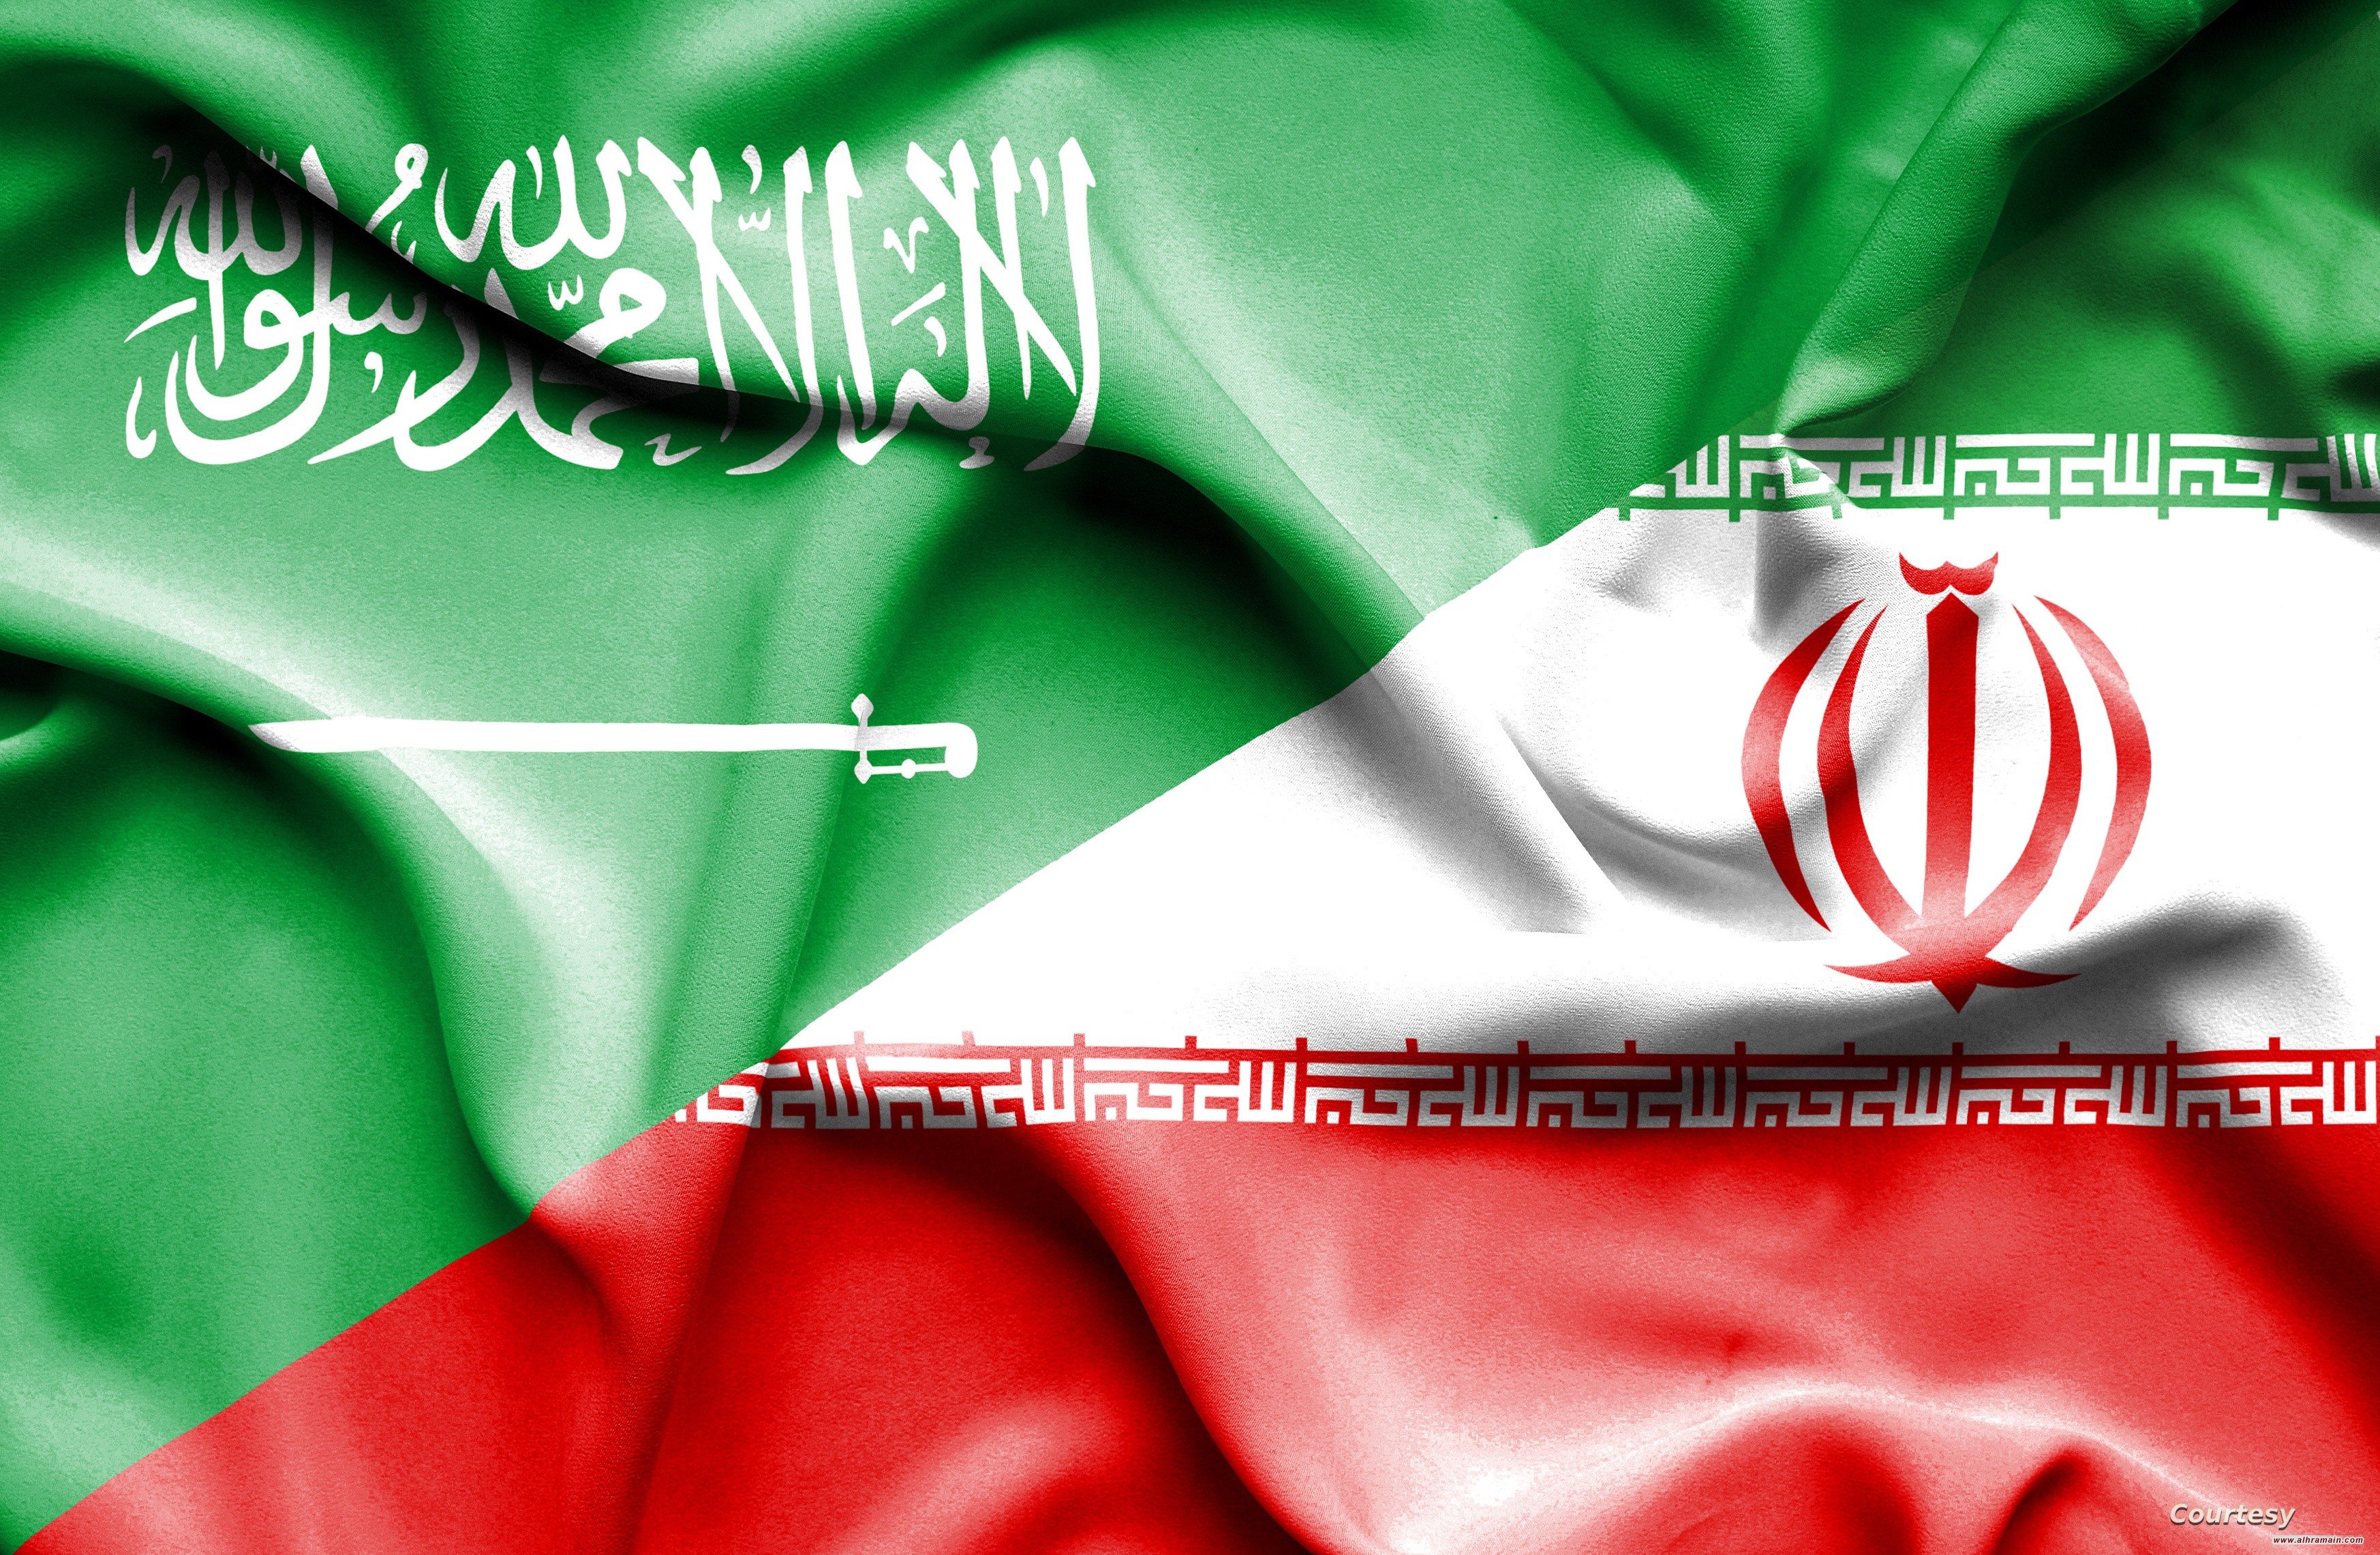 هل هُناك نوايا سعوديّة للتّقارب جدّيًّا مع إيران؟ وما الجديد الذي يَقِف خلف هذا التّغيير “المشروط”؟